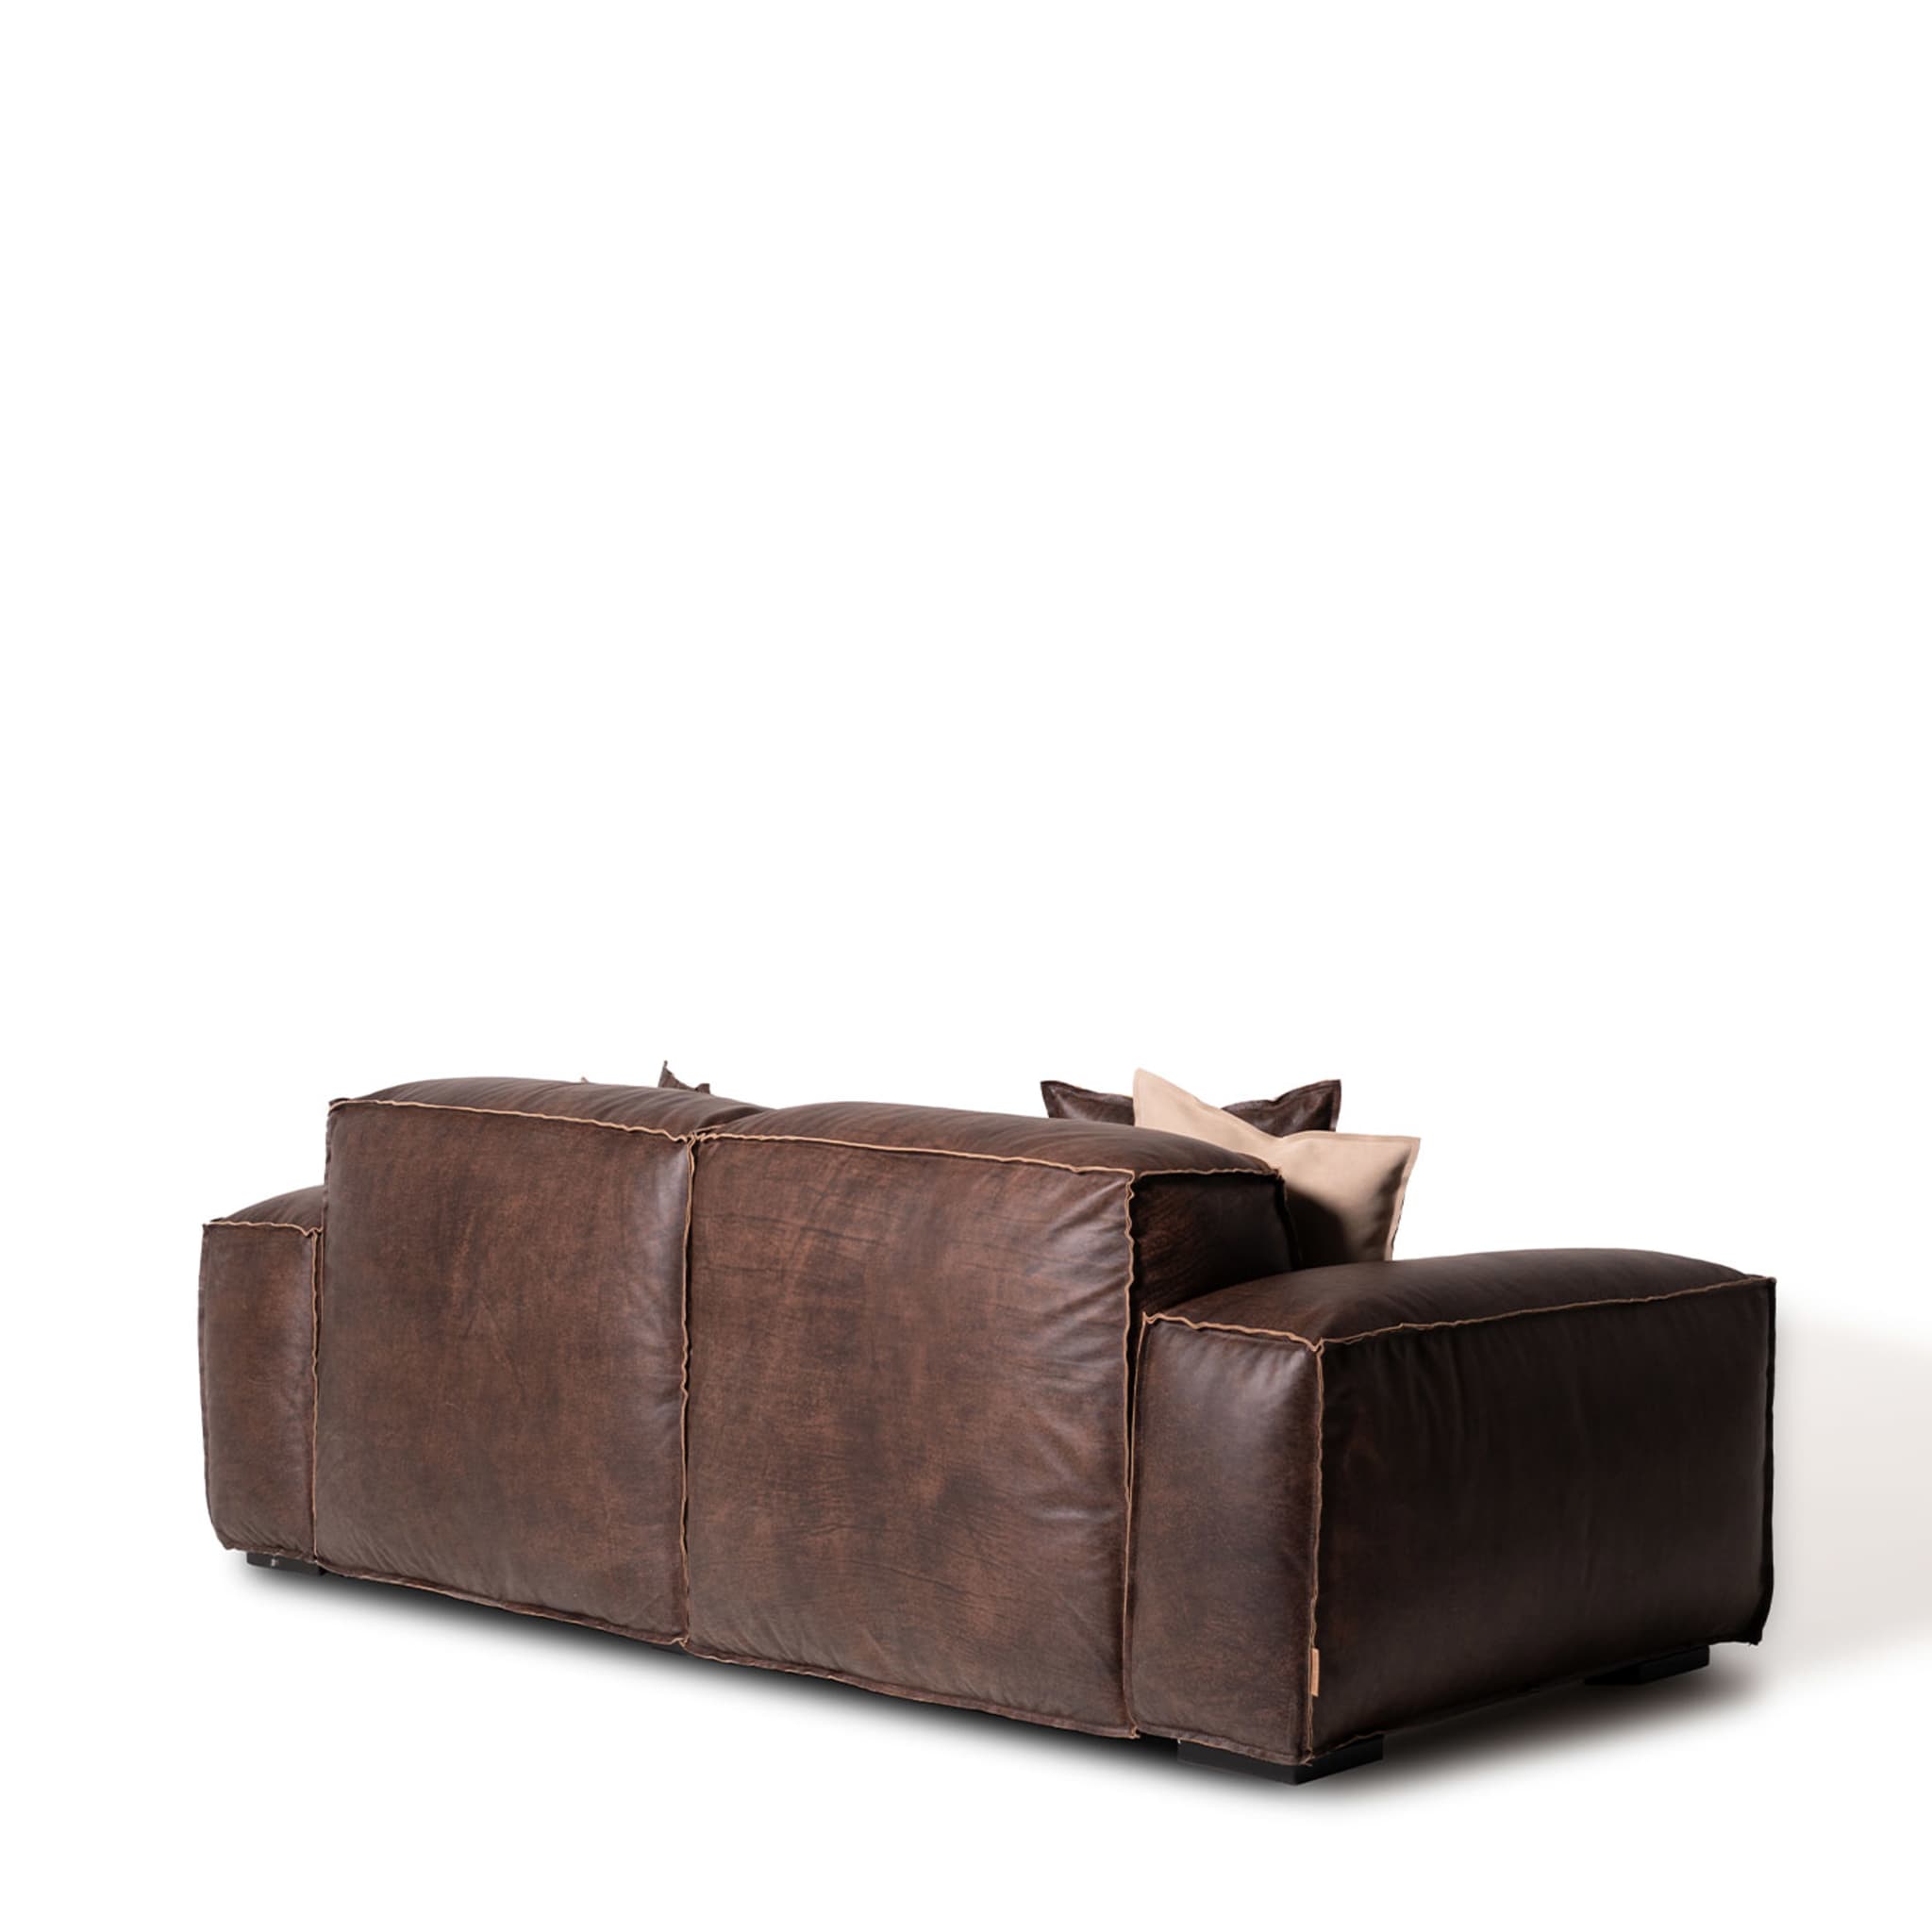 Placido 2 Seater Sofa Maxi by Marco and Giulio Mantellassi  - Alternative view 3